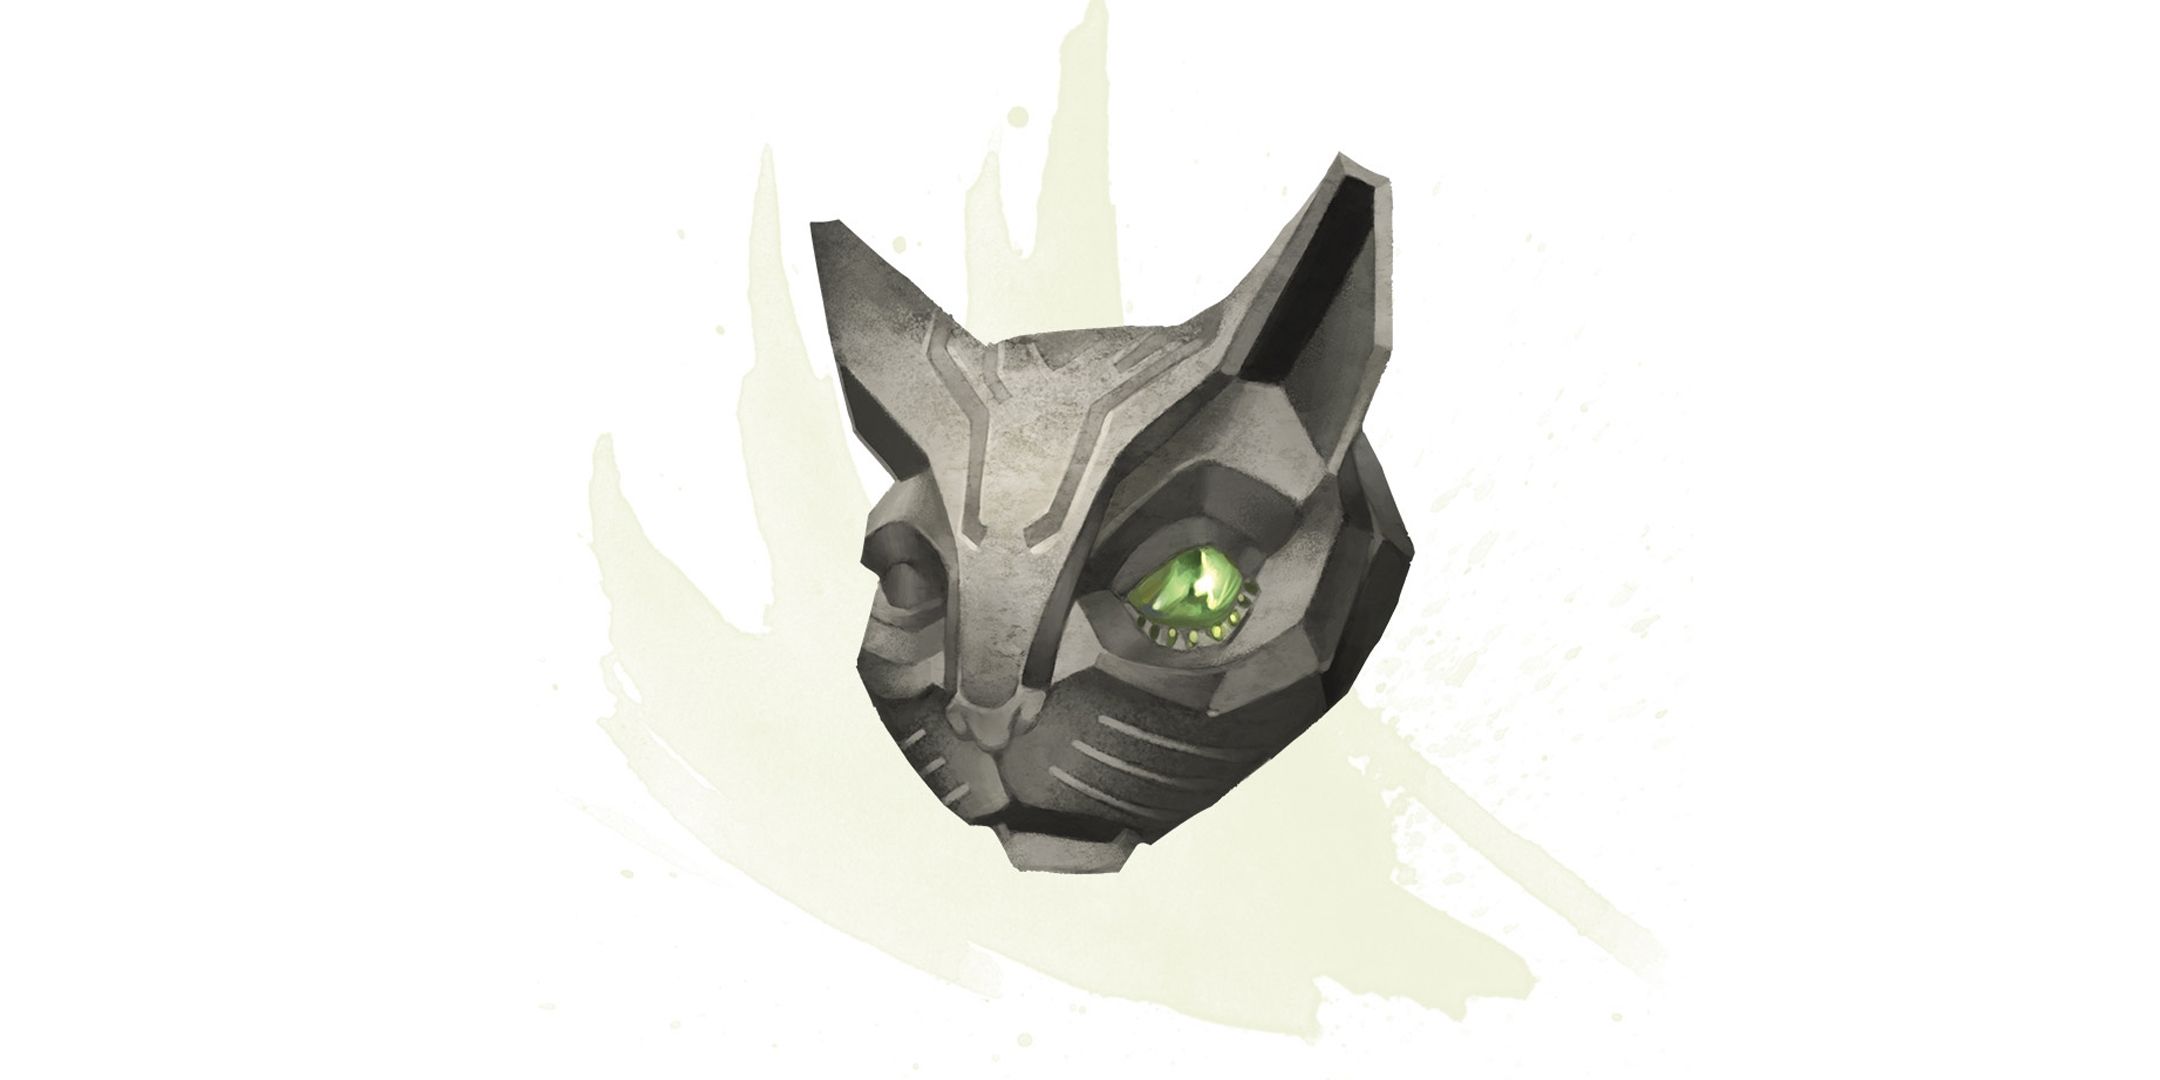 A Pedra da Boa Sorte em D&D, uma cabeça de gato com olho de cristal.